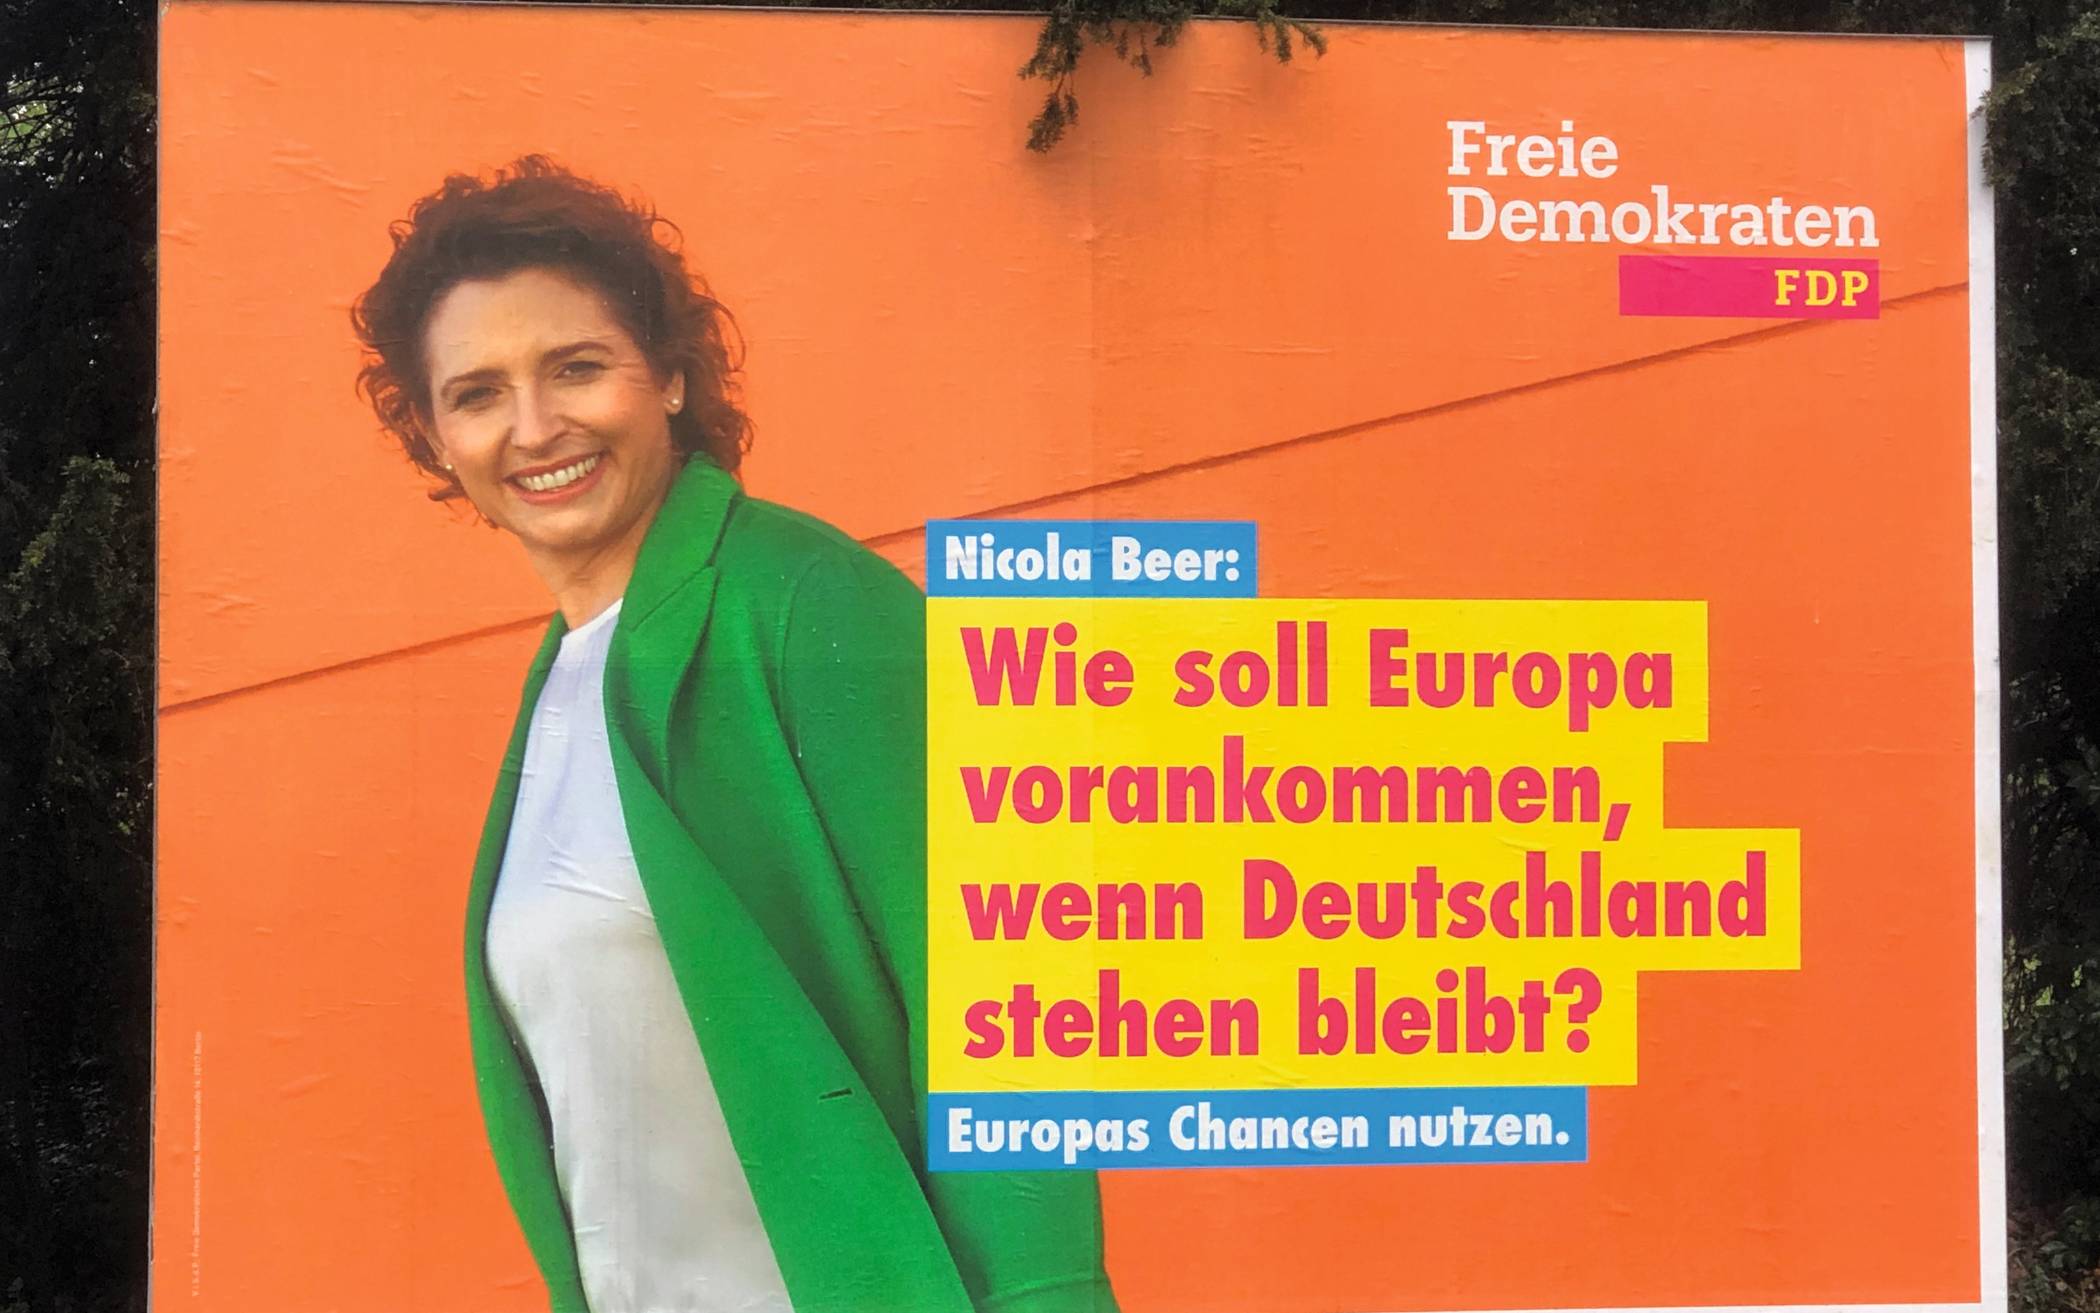 Die knalligen Farben sind seit der letzten Bundestagswahl eine Eigenheit der FDP. Man...